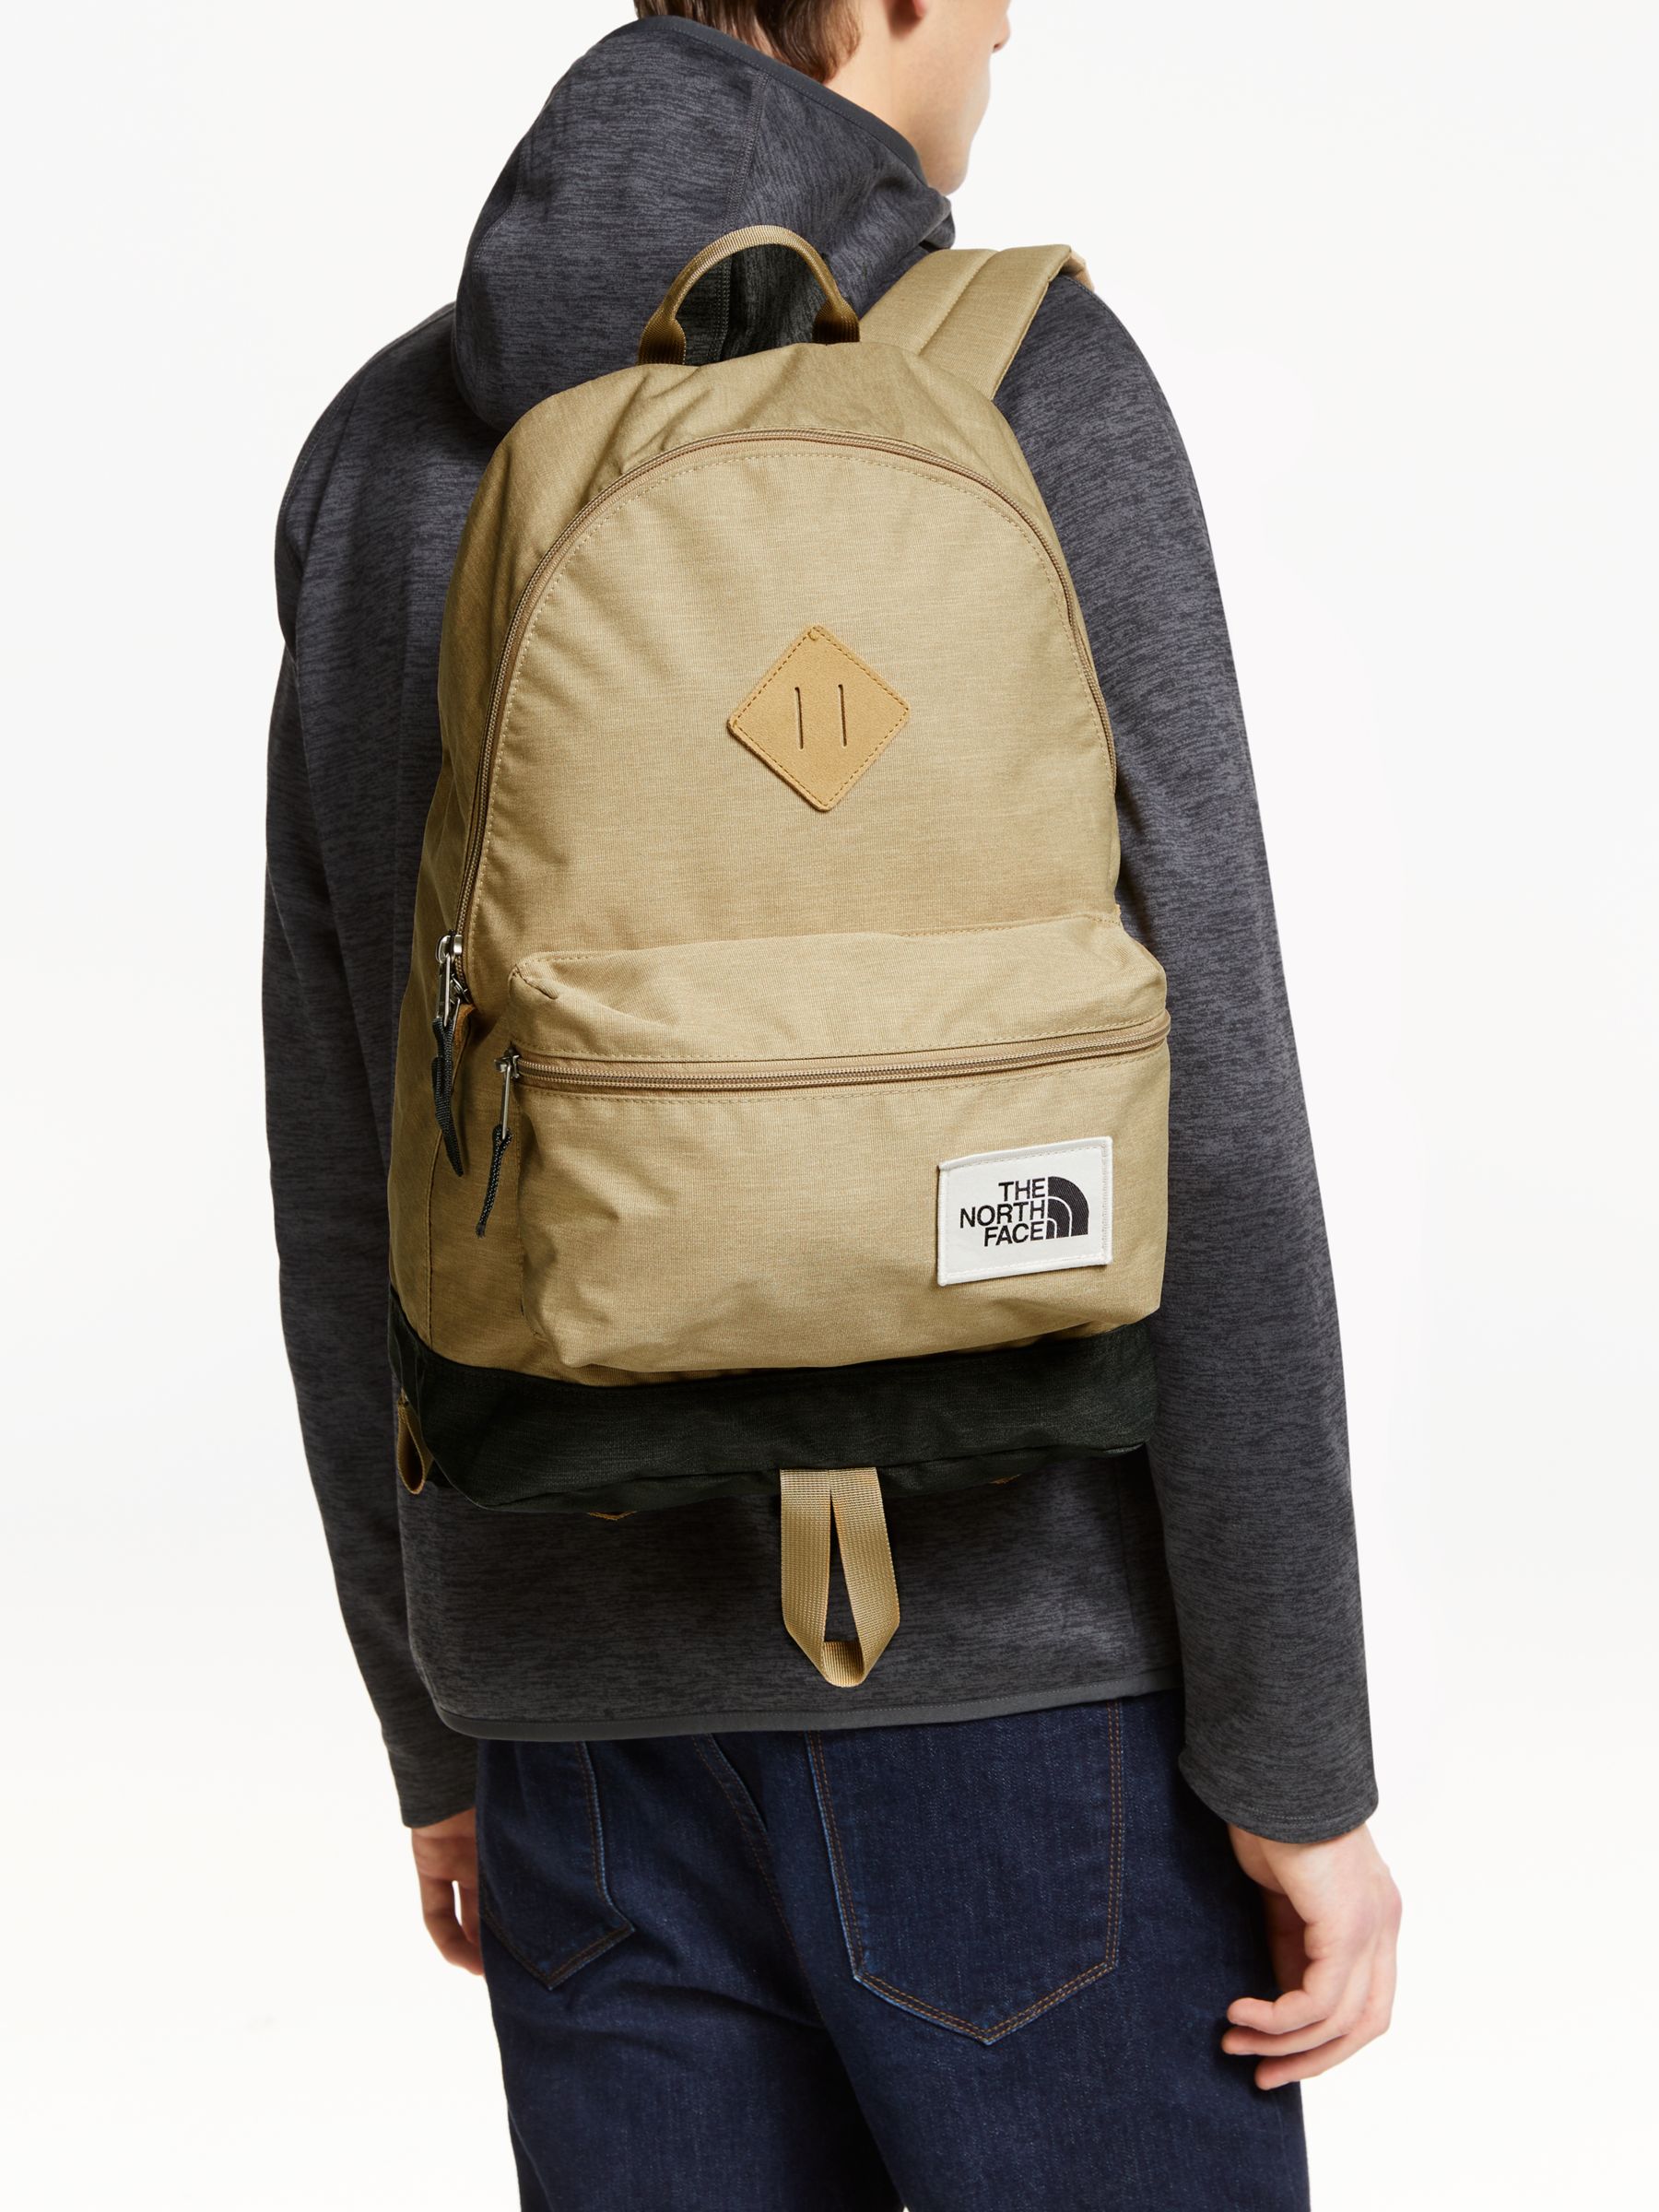 berkeley backpack